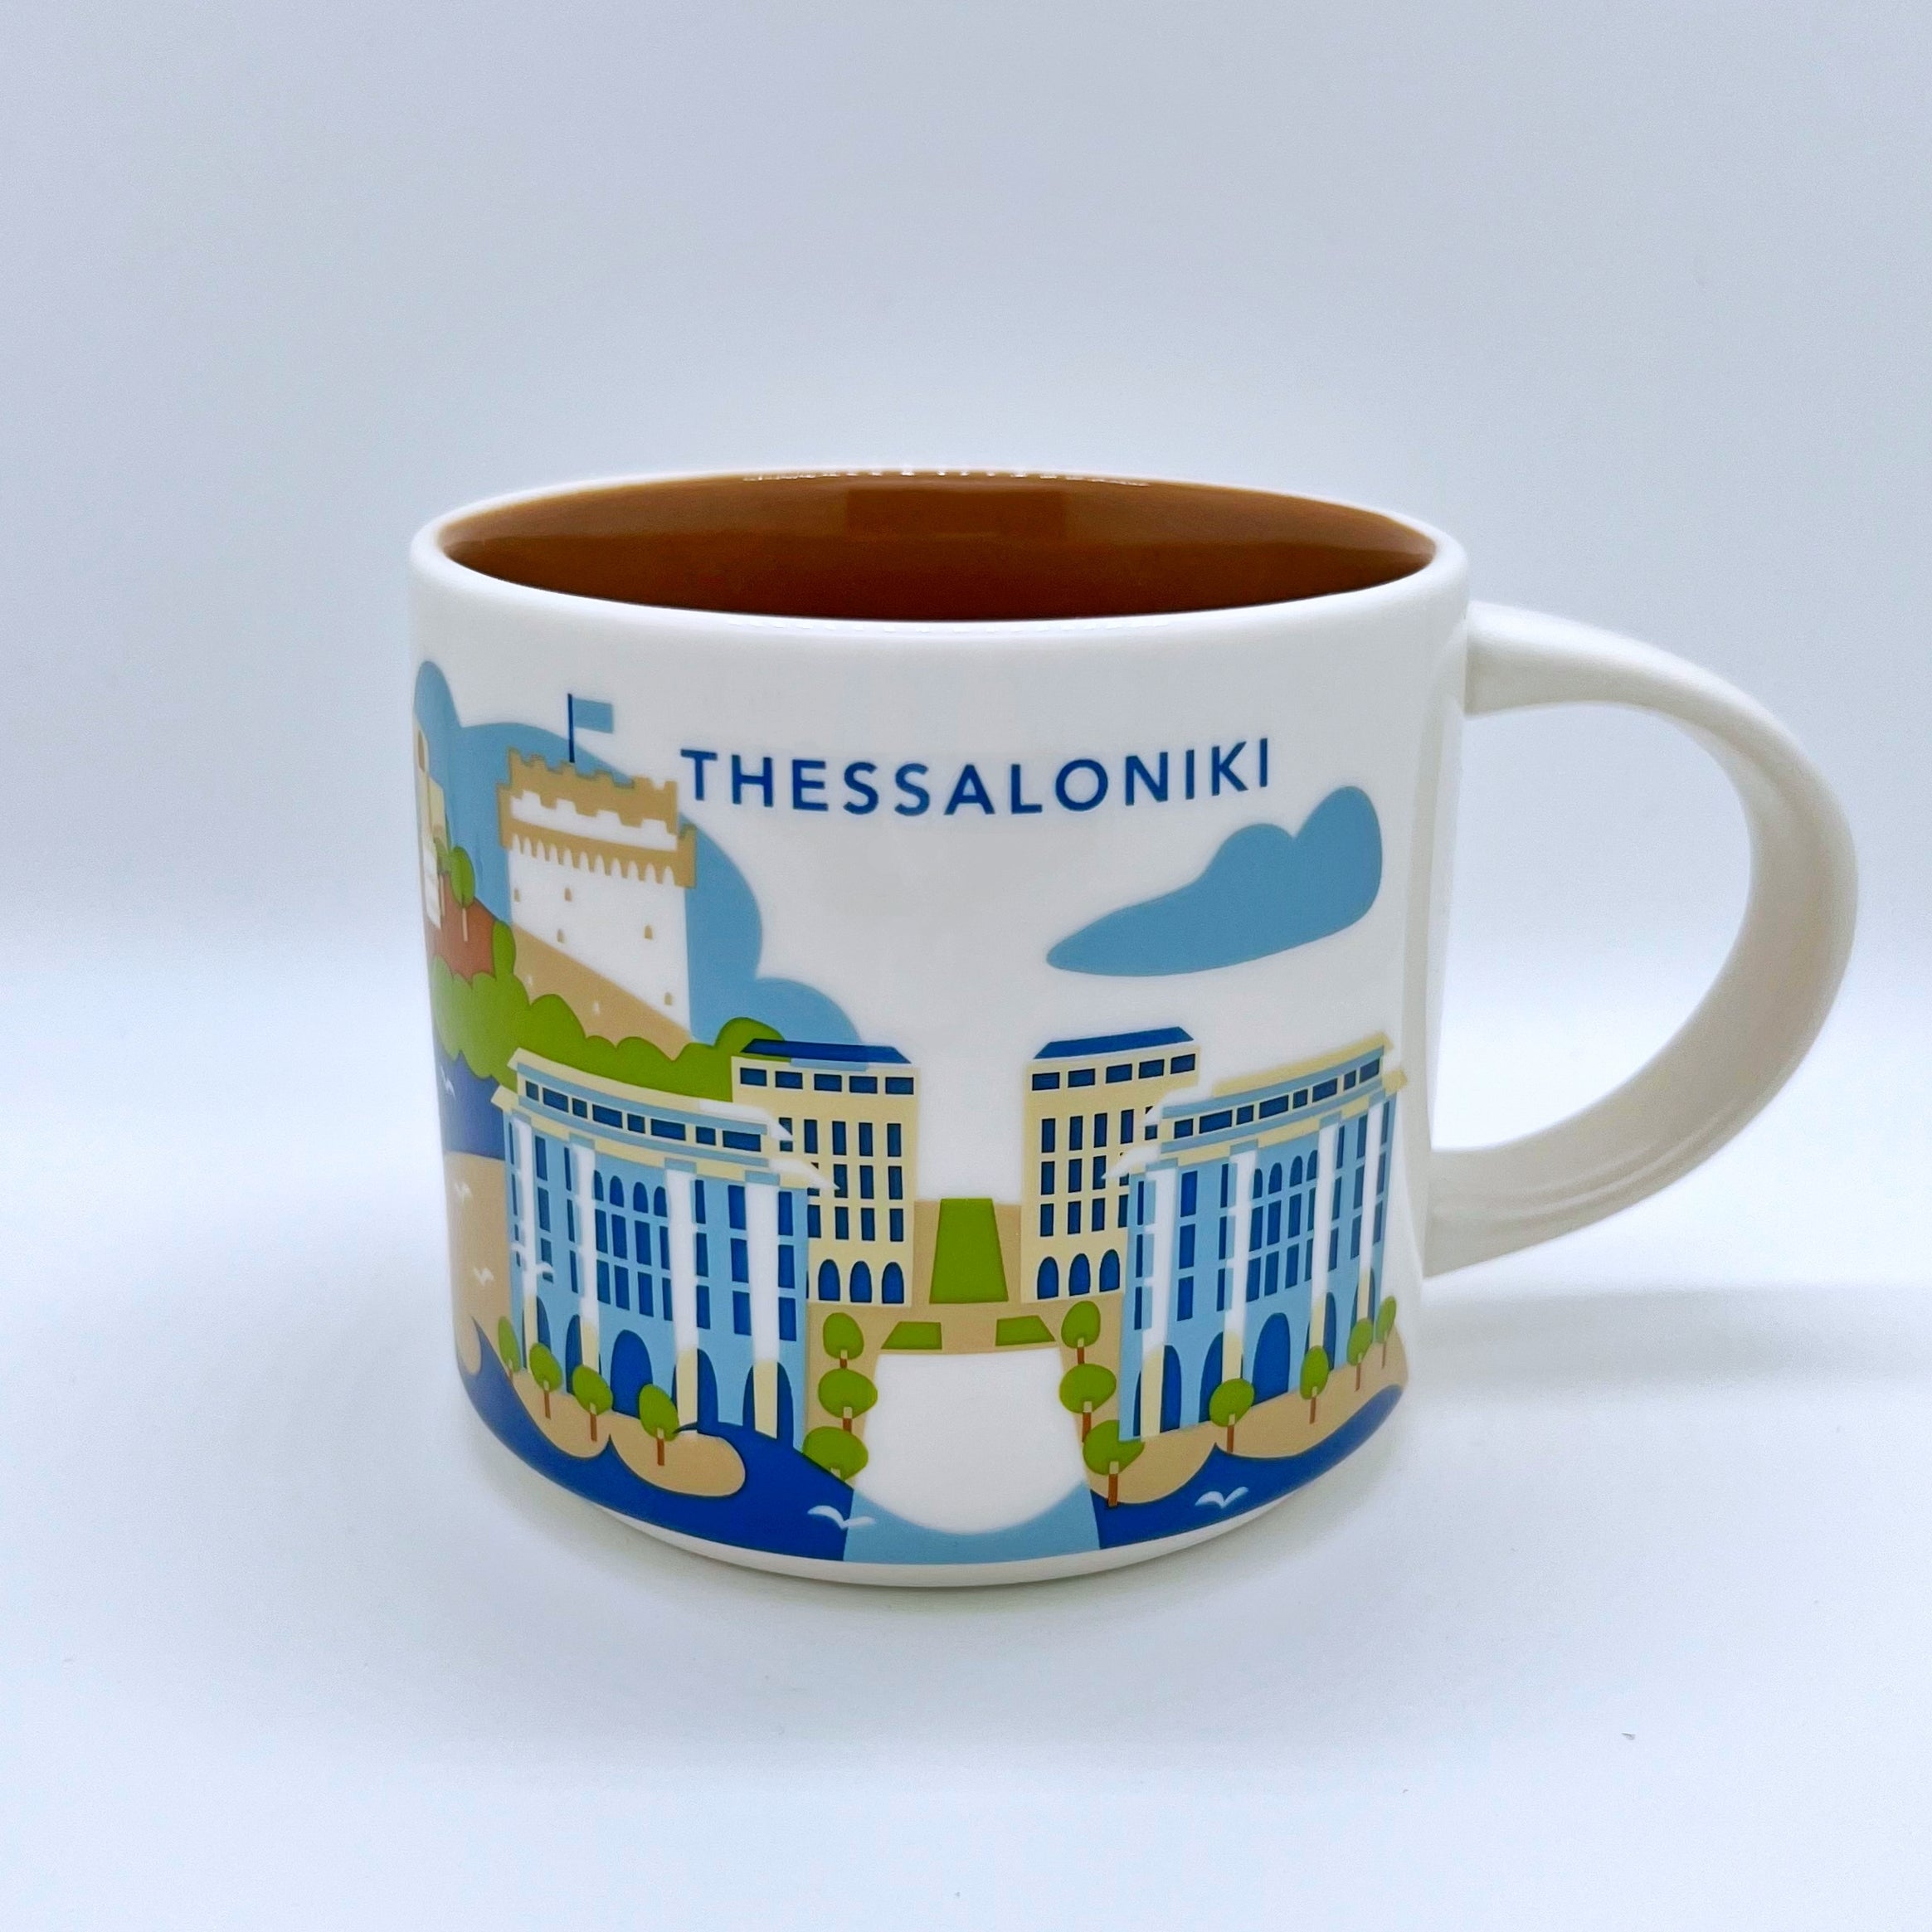 Kaffee Tee und Cappuccino Tasse von Starbucks mit gemalten Bildern aus der Stadt Thessaloniki